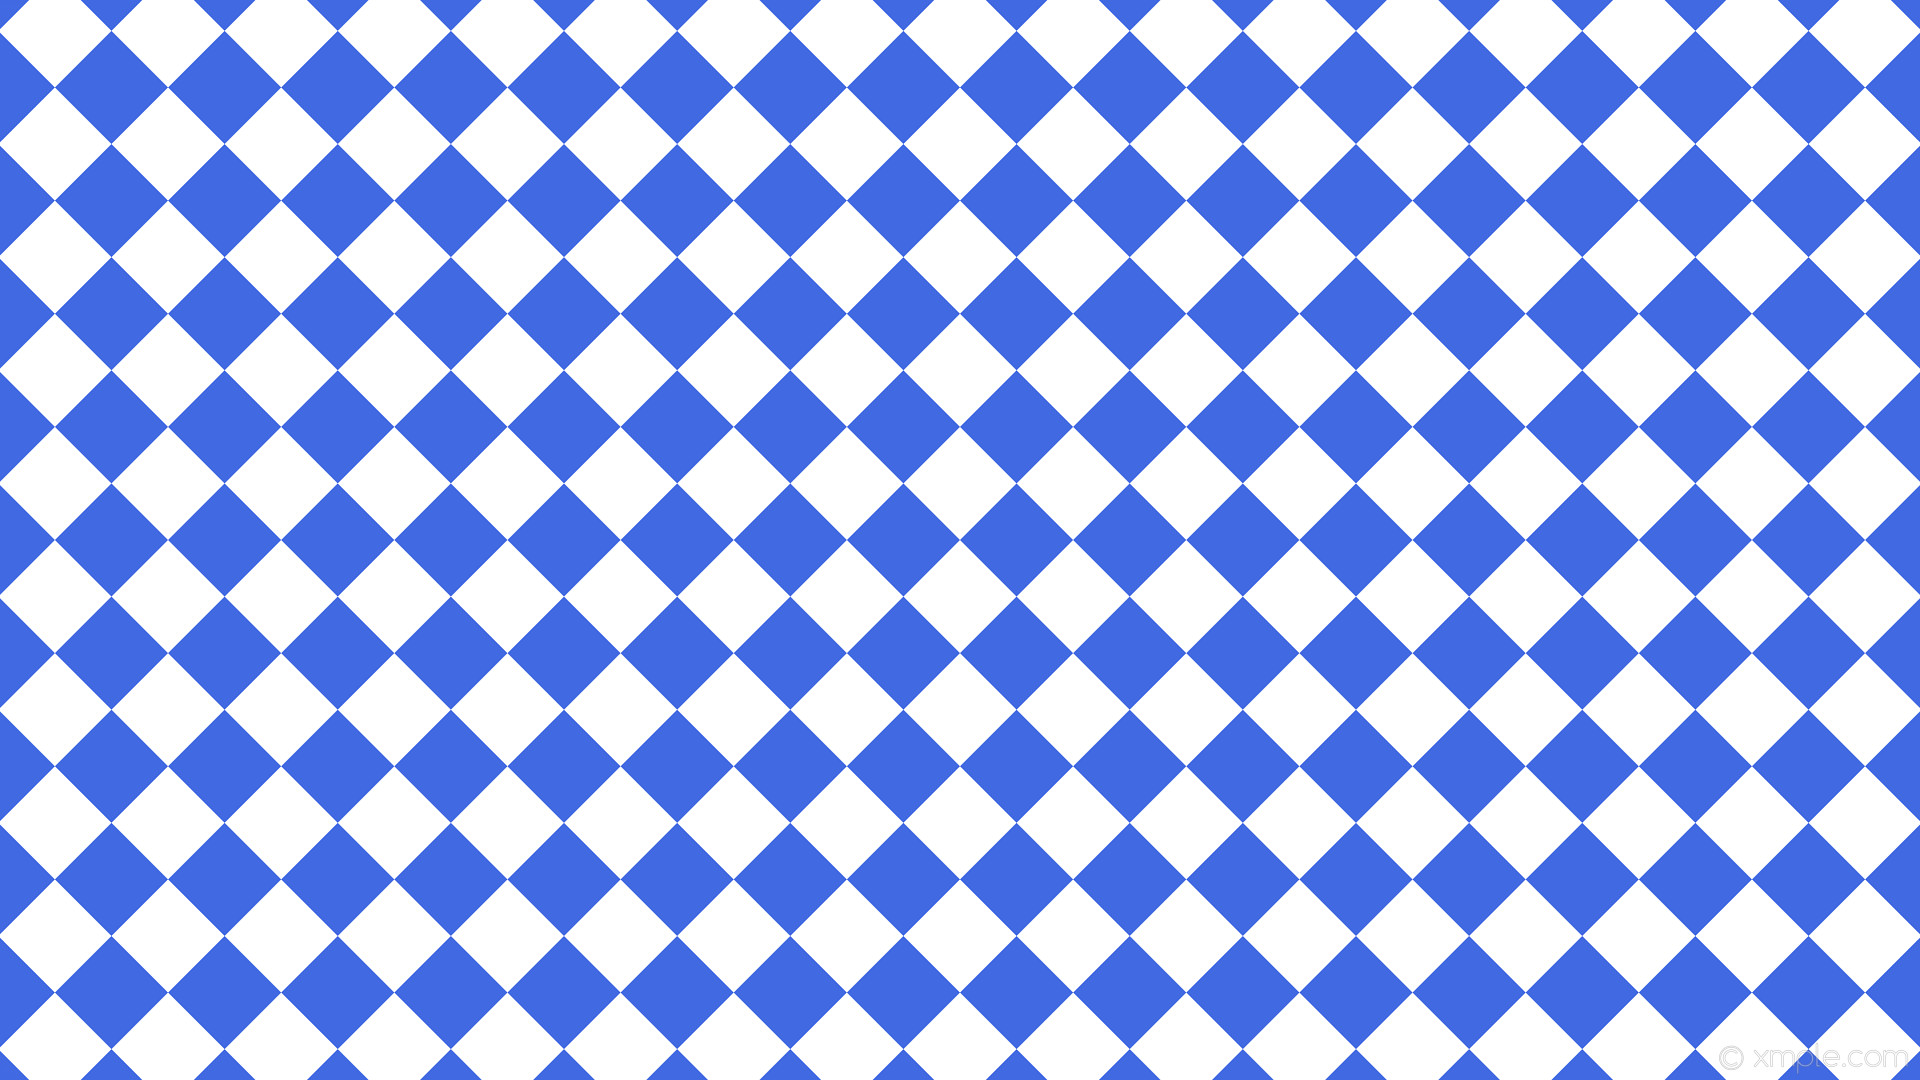 1920x1080 wallpaper squares white checkered blue royal blue #4169e1 #ffffff diagonal  45Â° 80px